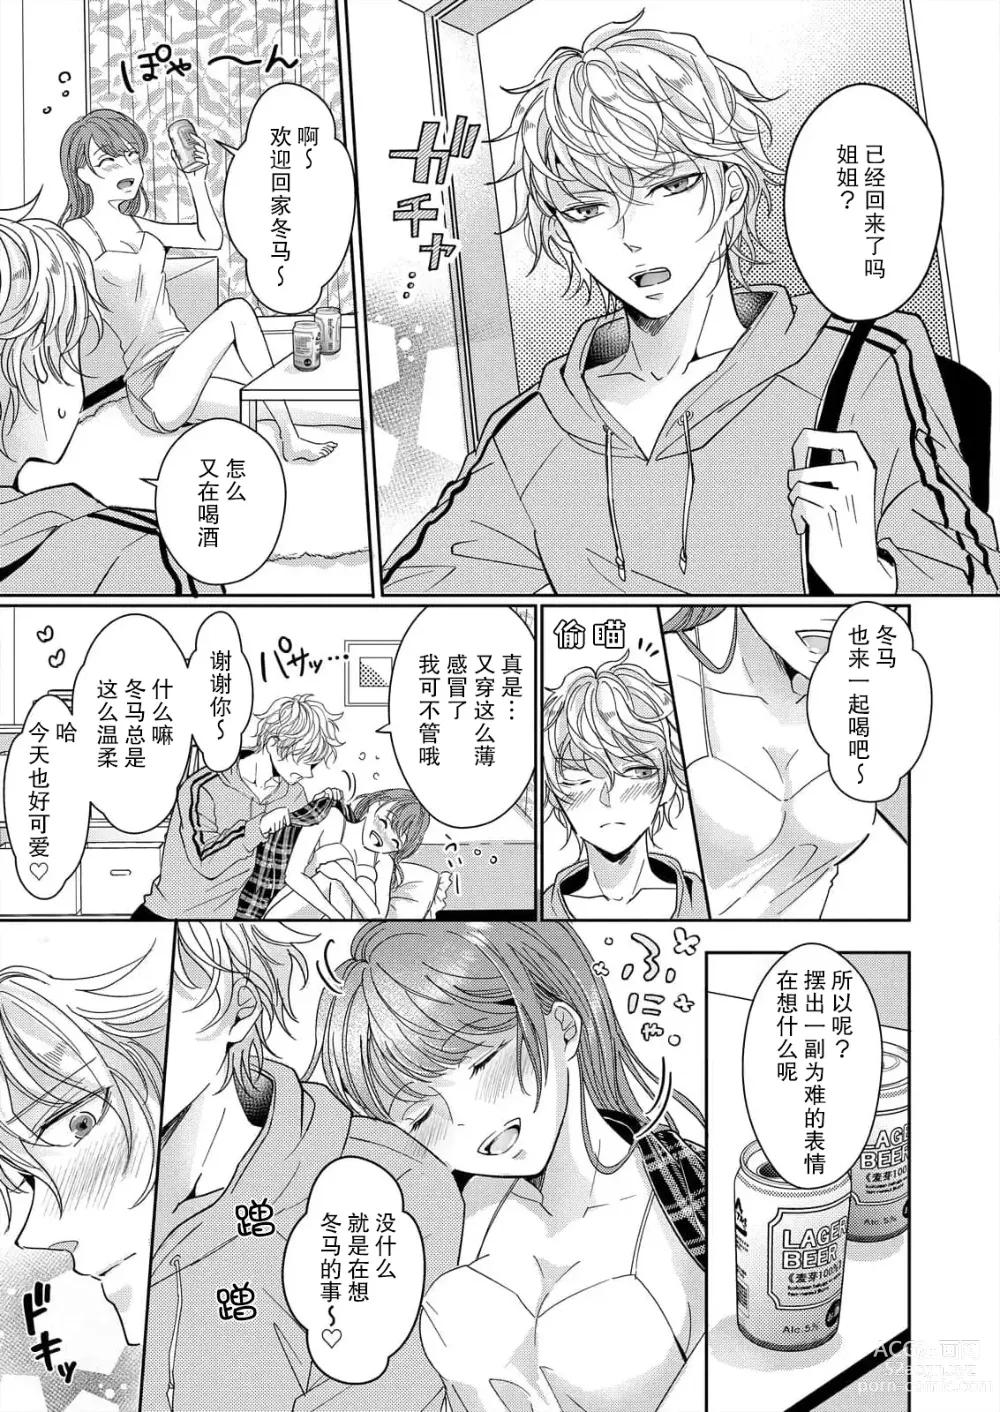 Page 5 of manga 姐弟时间结束~要做一些不能做的事情吗？1-2